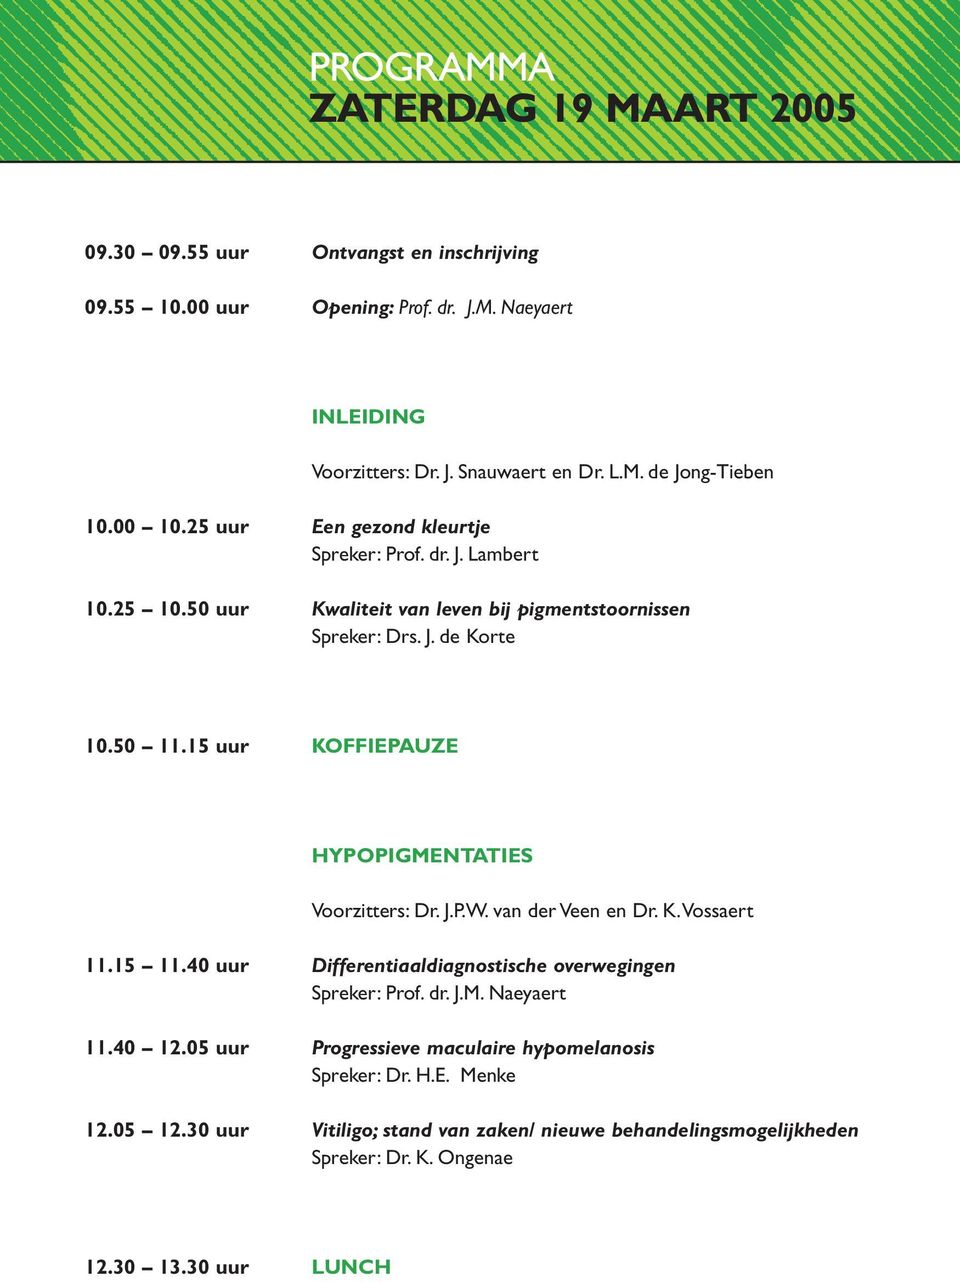 15 uur KOFFIEPAUZE HYPOPIGMENTATIES Voorzitters: Dr. J.P.W. van der Veen en Dr. K.Vossaert 11.15 11.40 uur Differentiaaldiagnostische overwegingen Spreker: Prof. dr. J.M. Naeyaert 11.